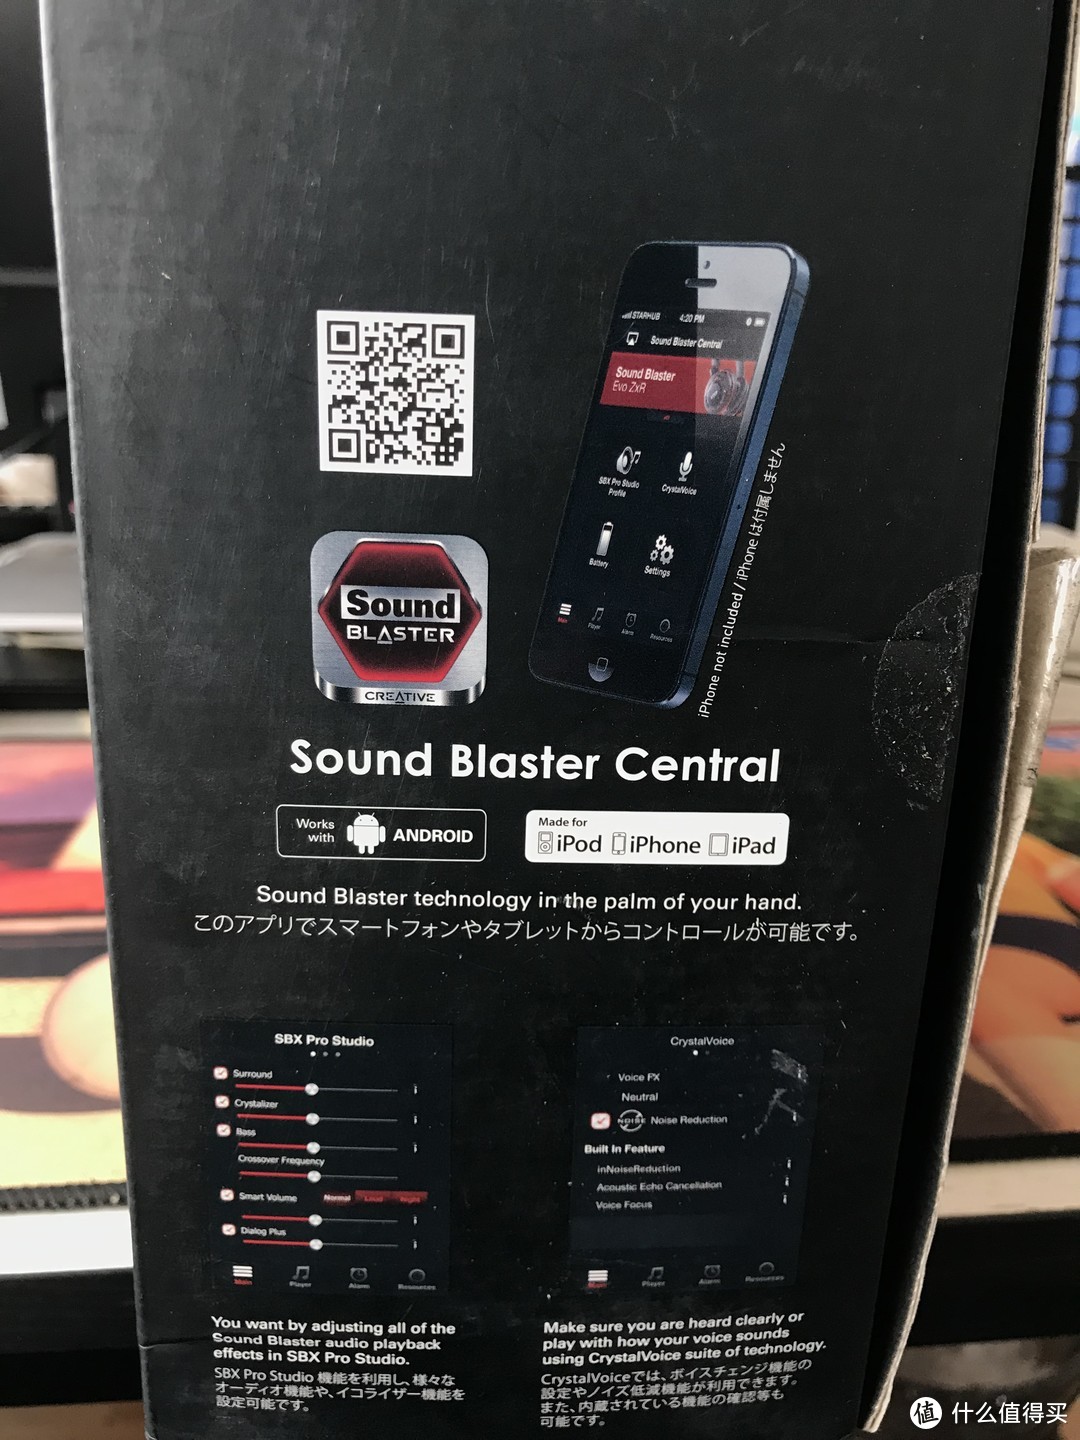 【618好价晒单】创新SoundBlaster Evo ZX游戏无线耳机开箱晒单